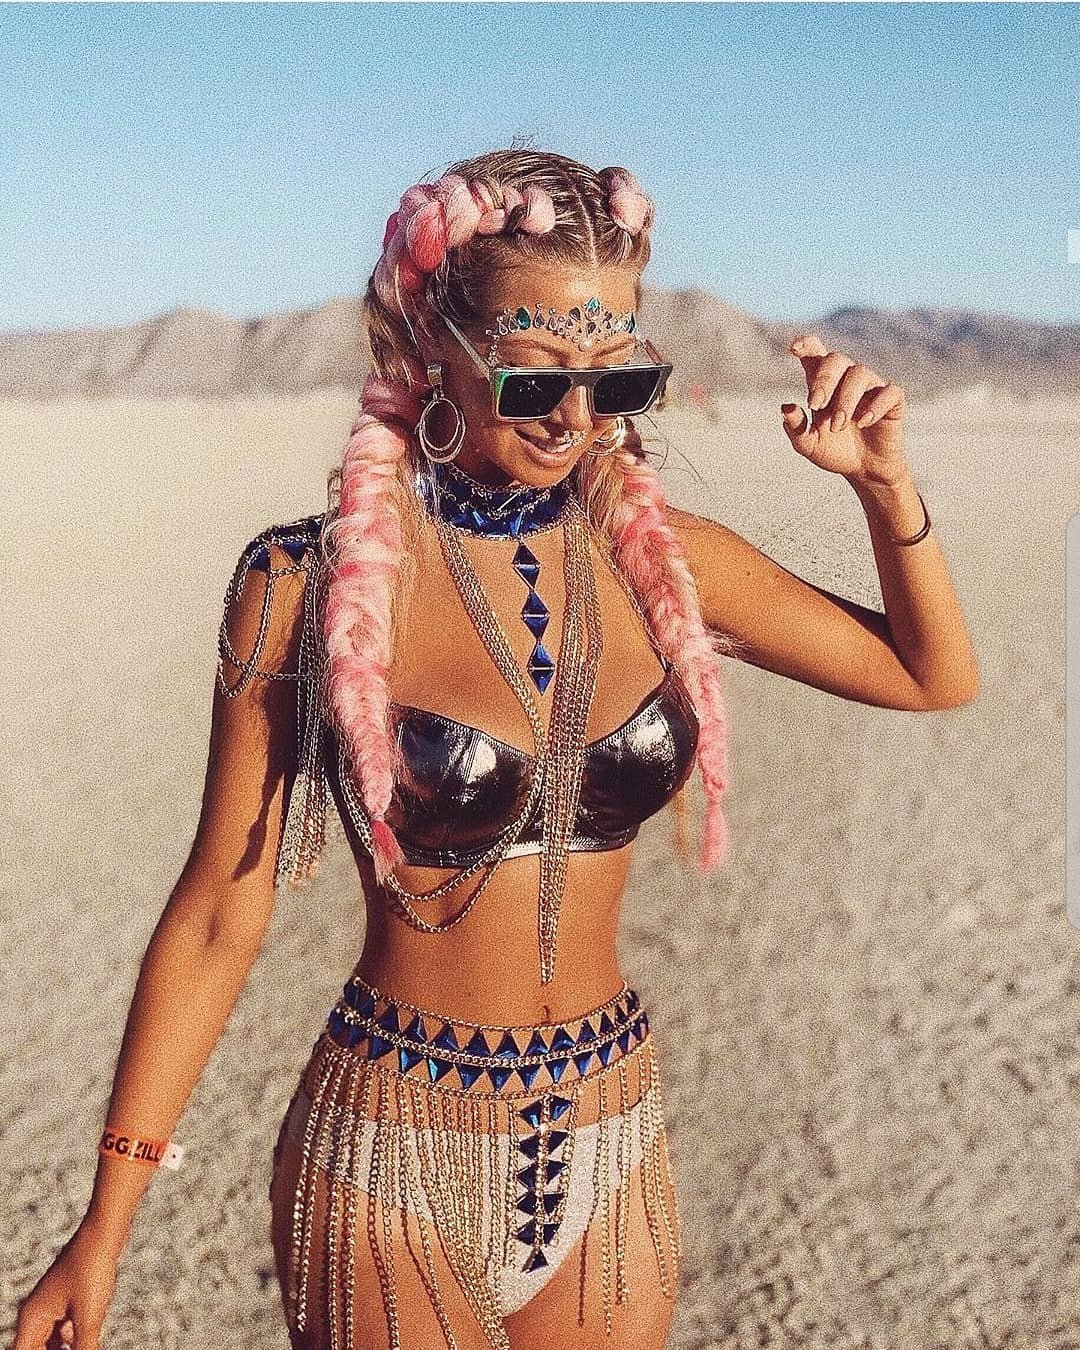 Нереальной красоты скульптуры и голые тела на фестивале Burning Man 2019 - фото 448415